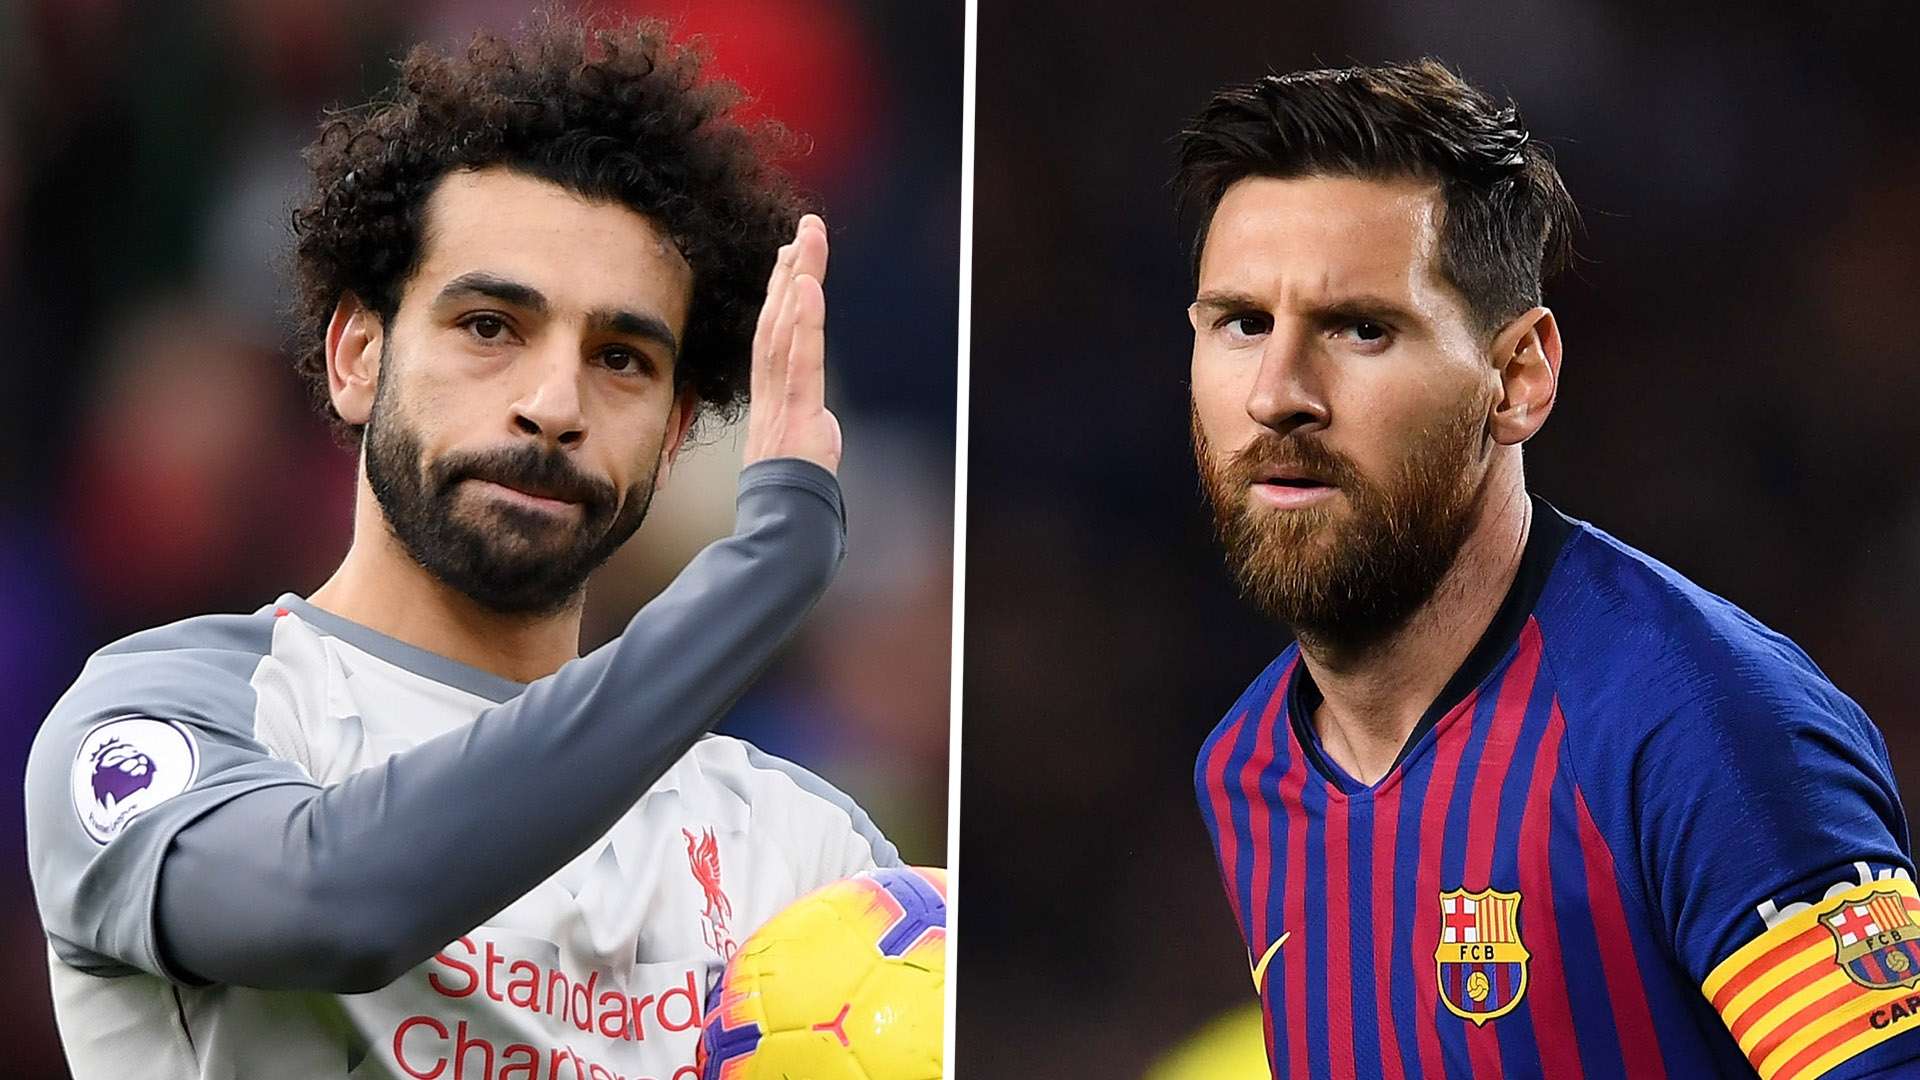 Mohamed Salah Lionel Messi Liverpool Barcelona 2018